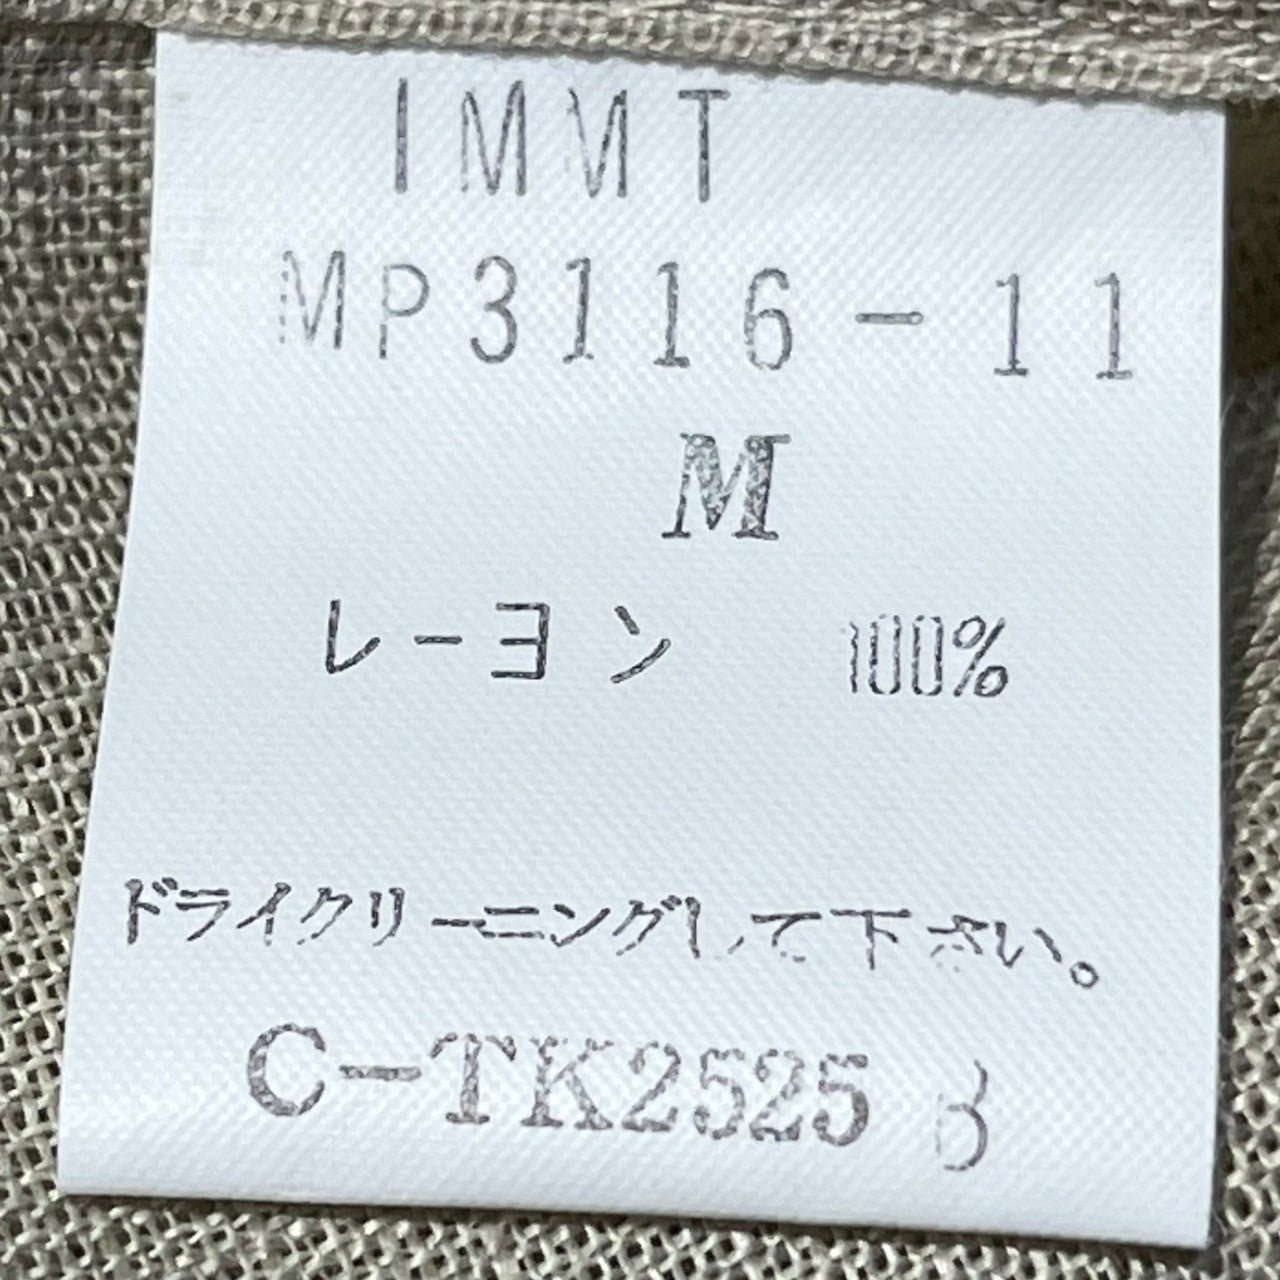 MIYAKE DESIGN STUDIO(ミヤケデザインスタジオ) 80’s ~ 90’s band collar rayon shirt バンドカラー レーヨン シャツ ハミルトン社製 IMMT MP3116-11 M ベージュ デッドストック イッセイミヤケ